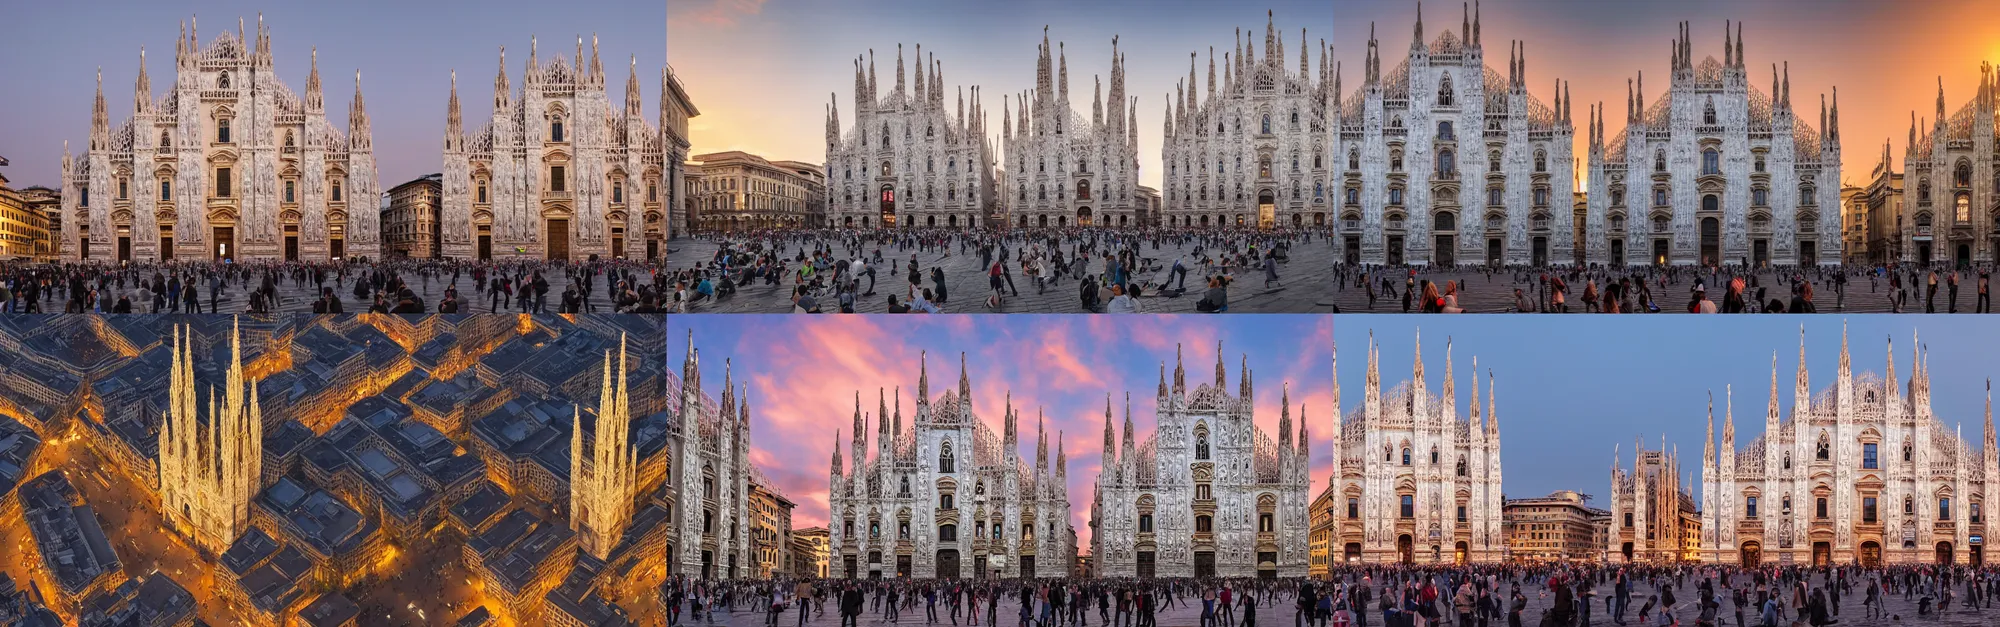 The Milan Duomo at sunset